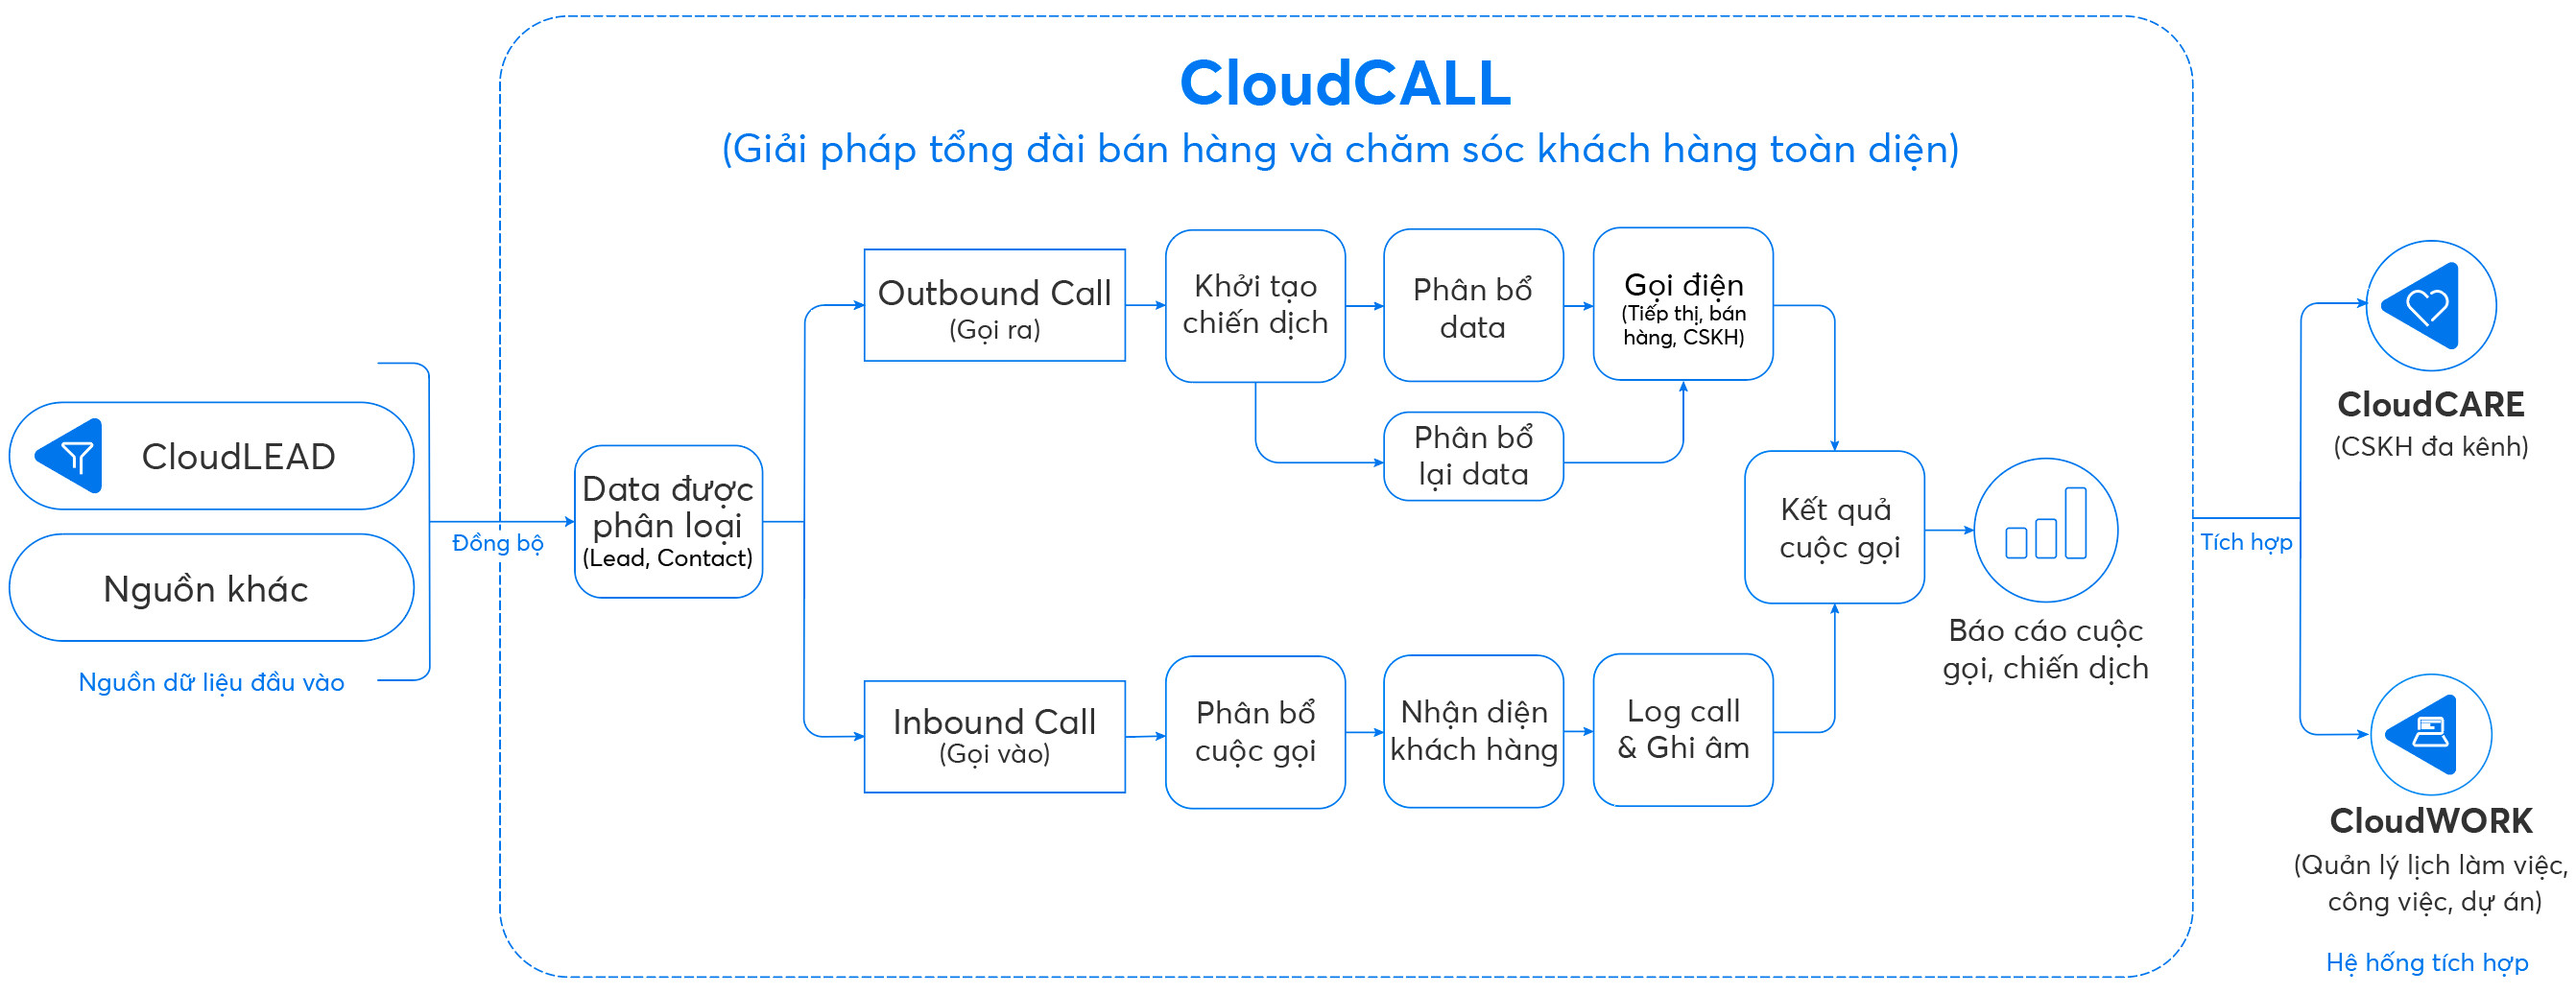 Quy trình giải pháp tổng đài bán hàng và chăm sóc khách hàng bằng CloudCALL